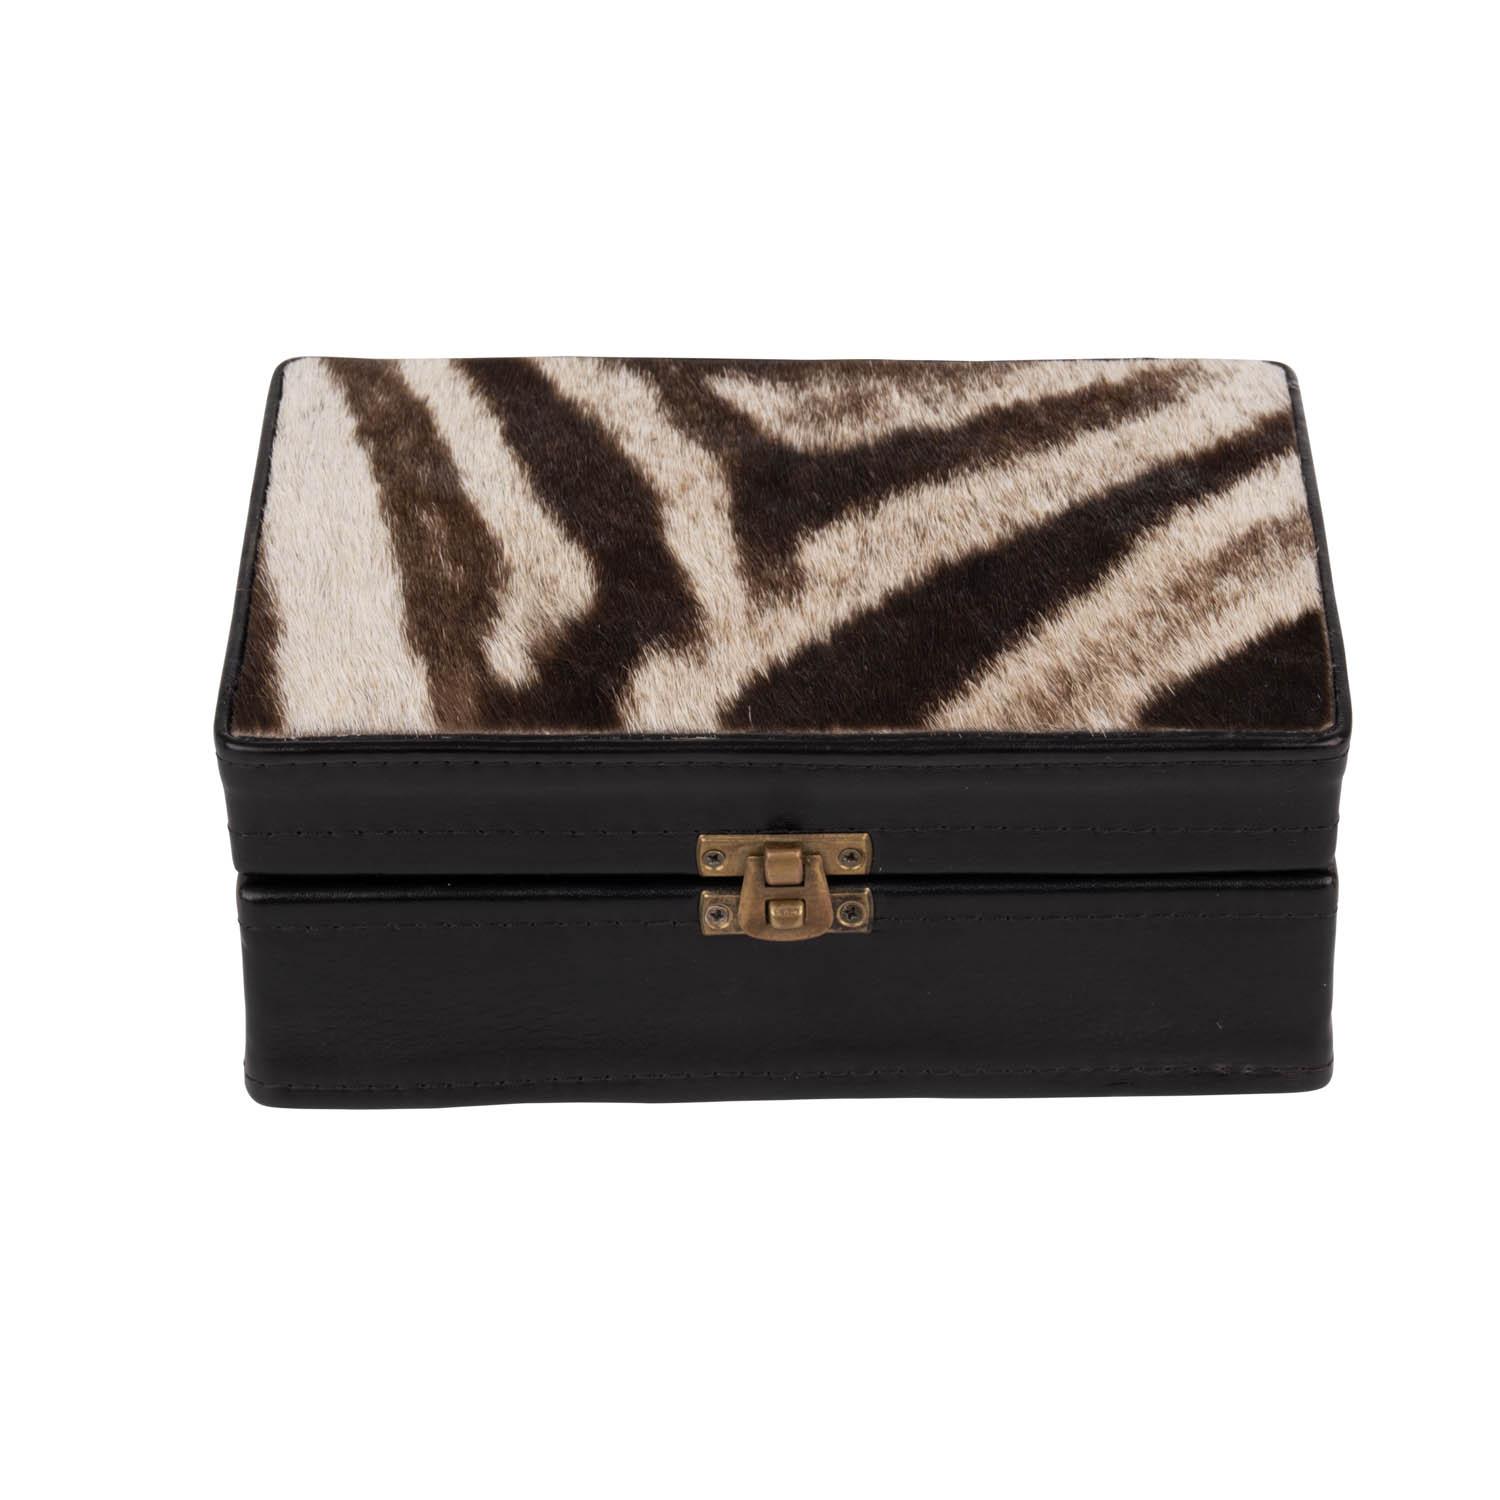 Zebra Hide & Leather Box - Small